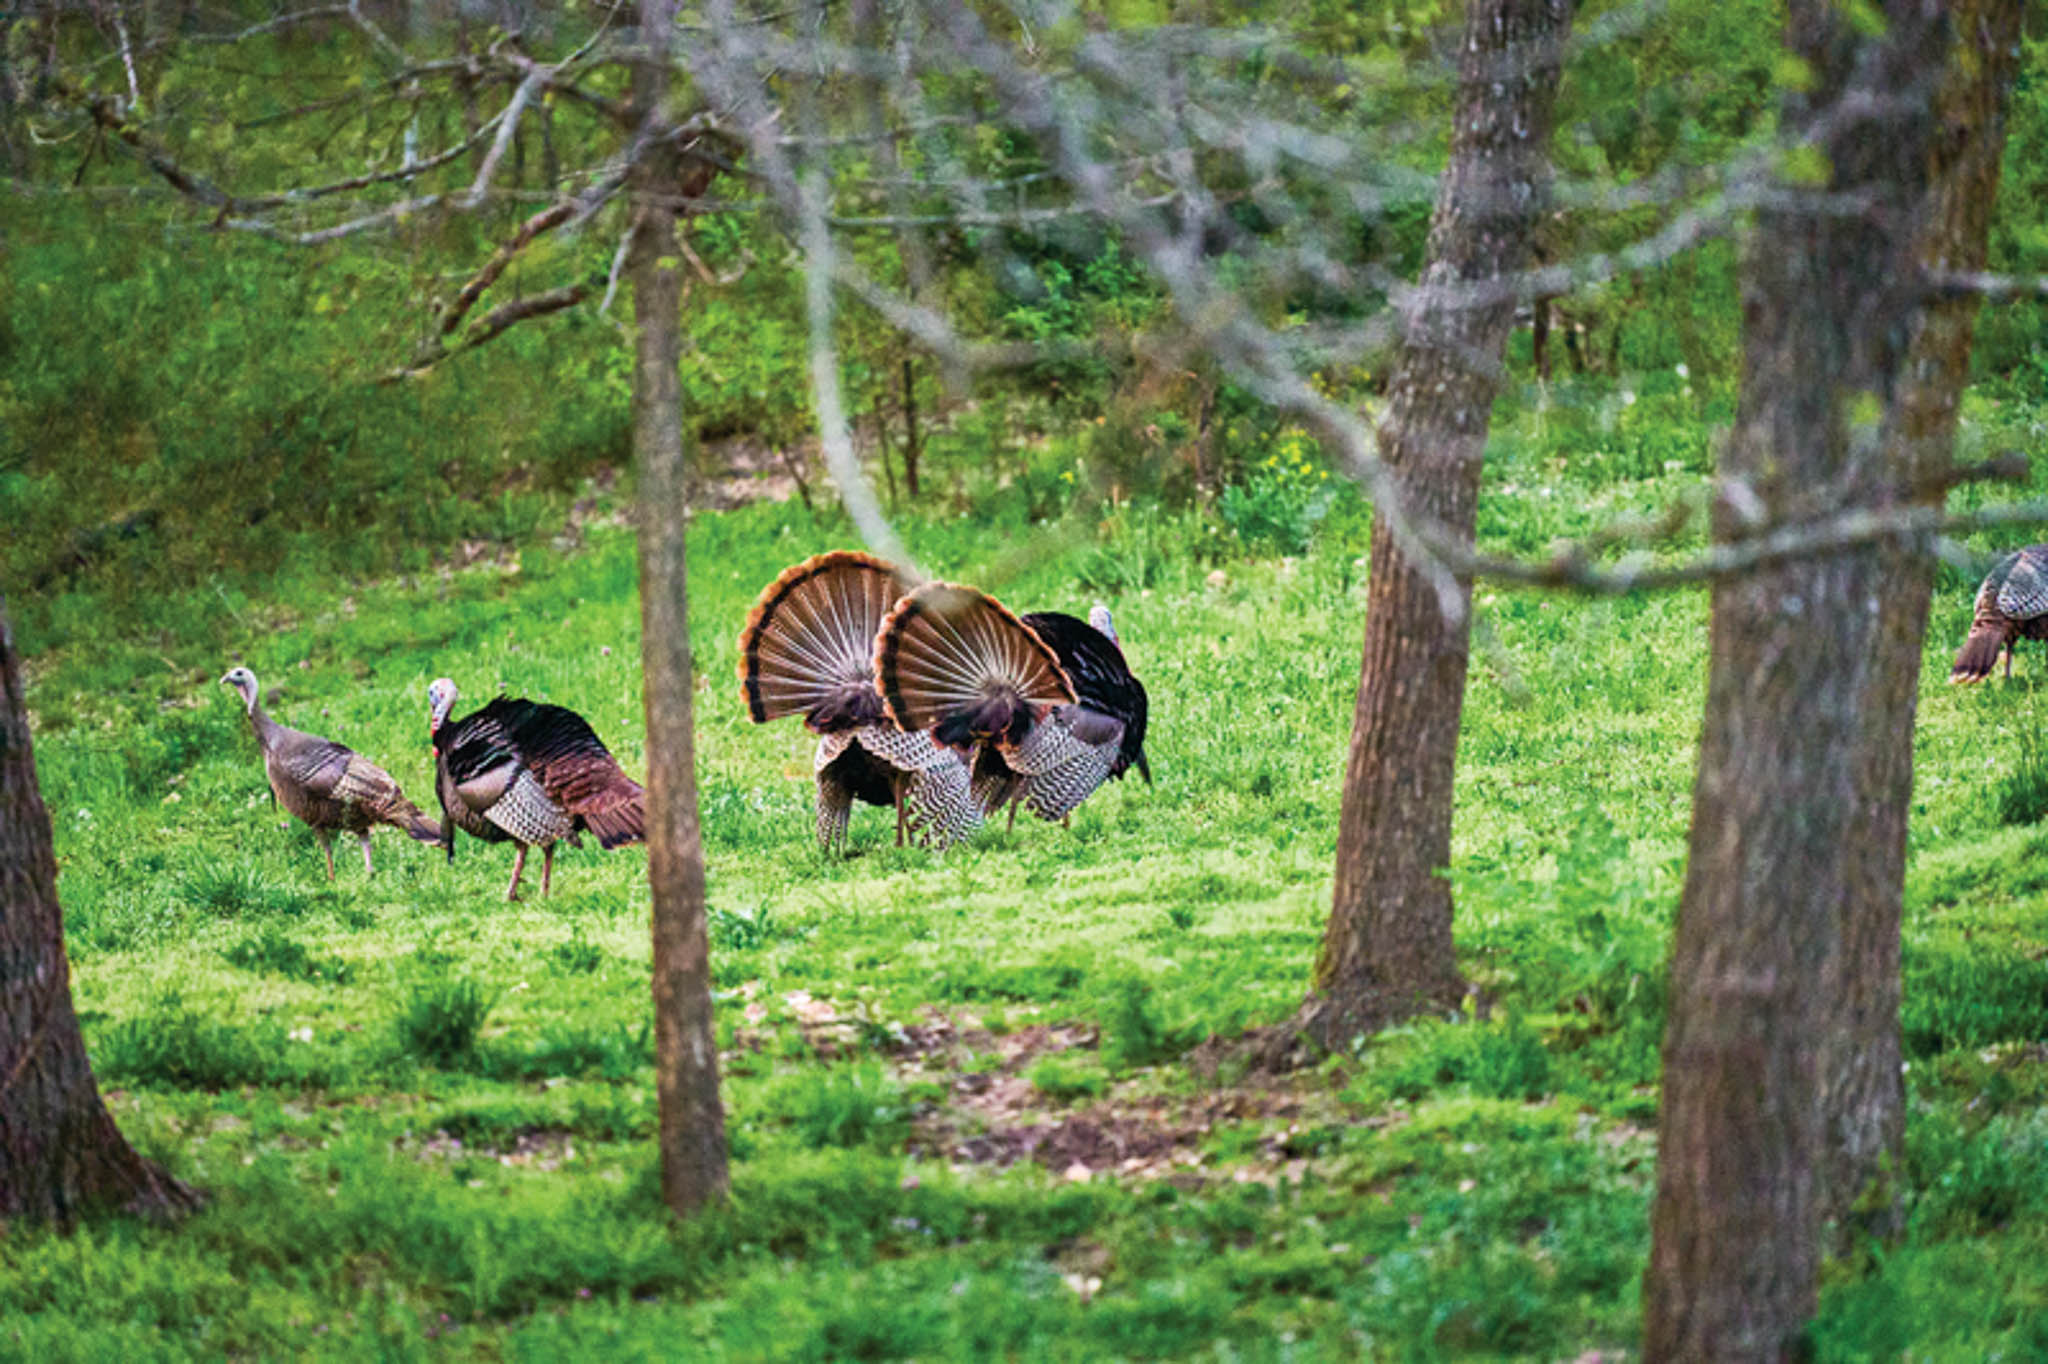 Wild turkeys in a field